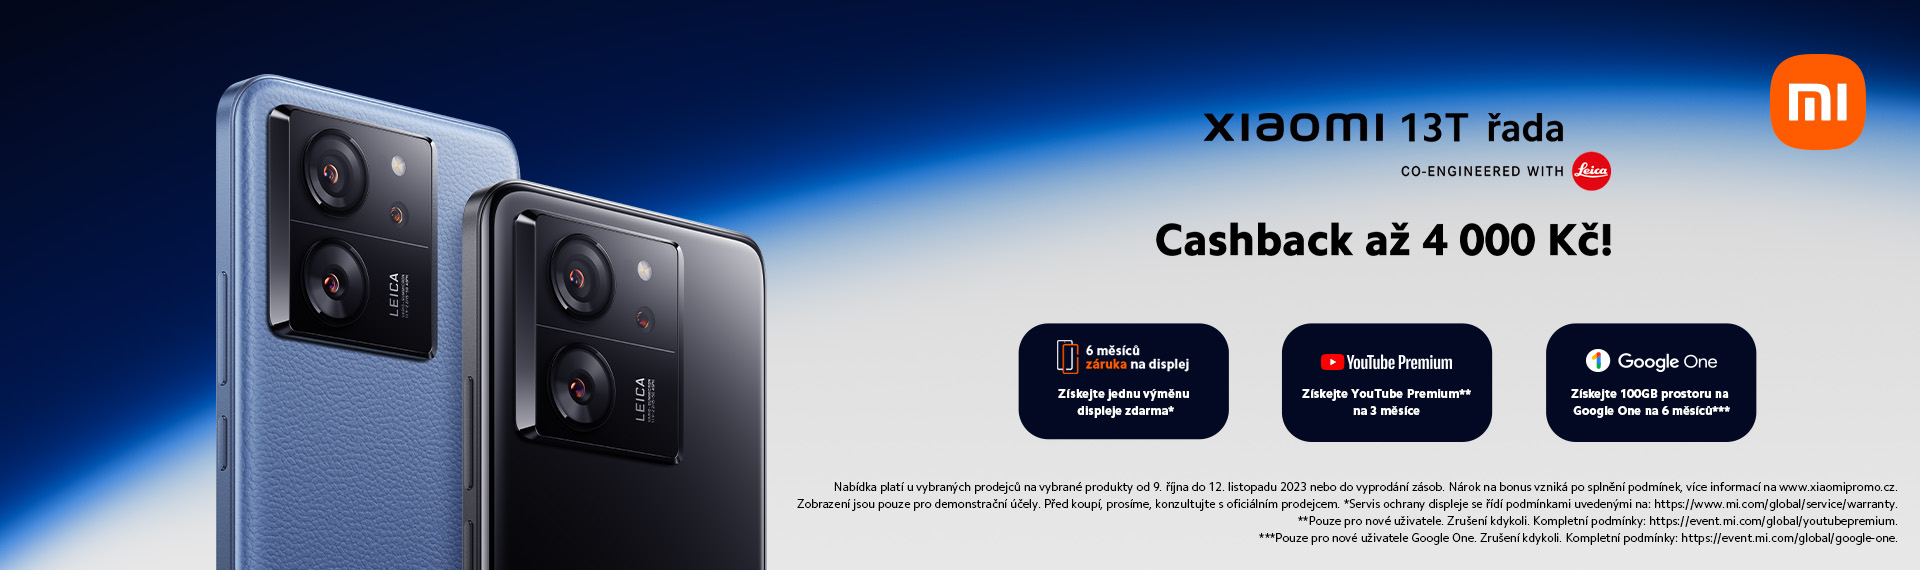 CashBack až 4000 Kč k nákupu Xiaomi 13T a Xiaomi 13T Pro